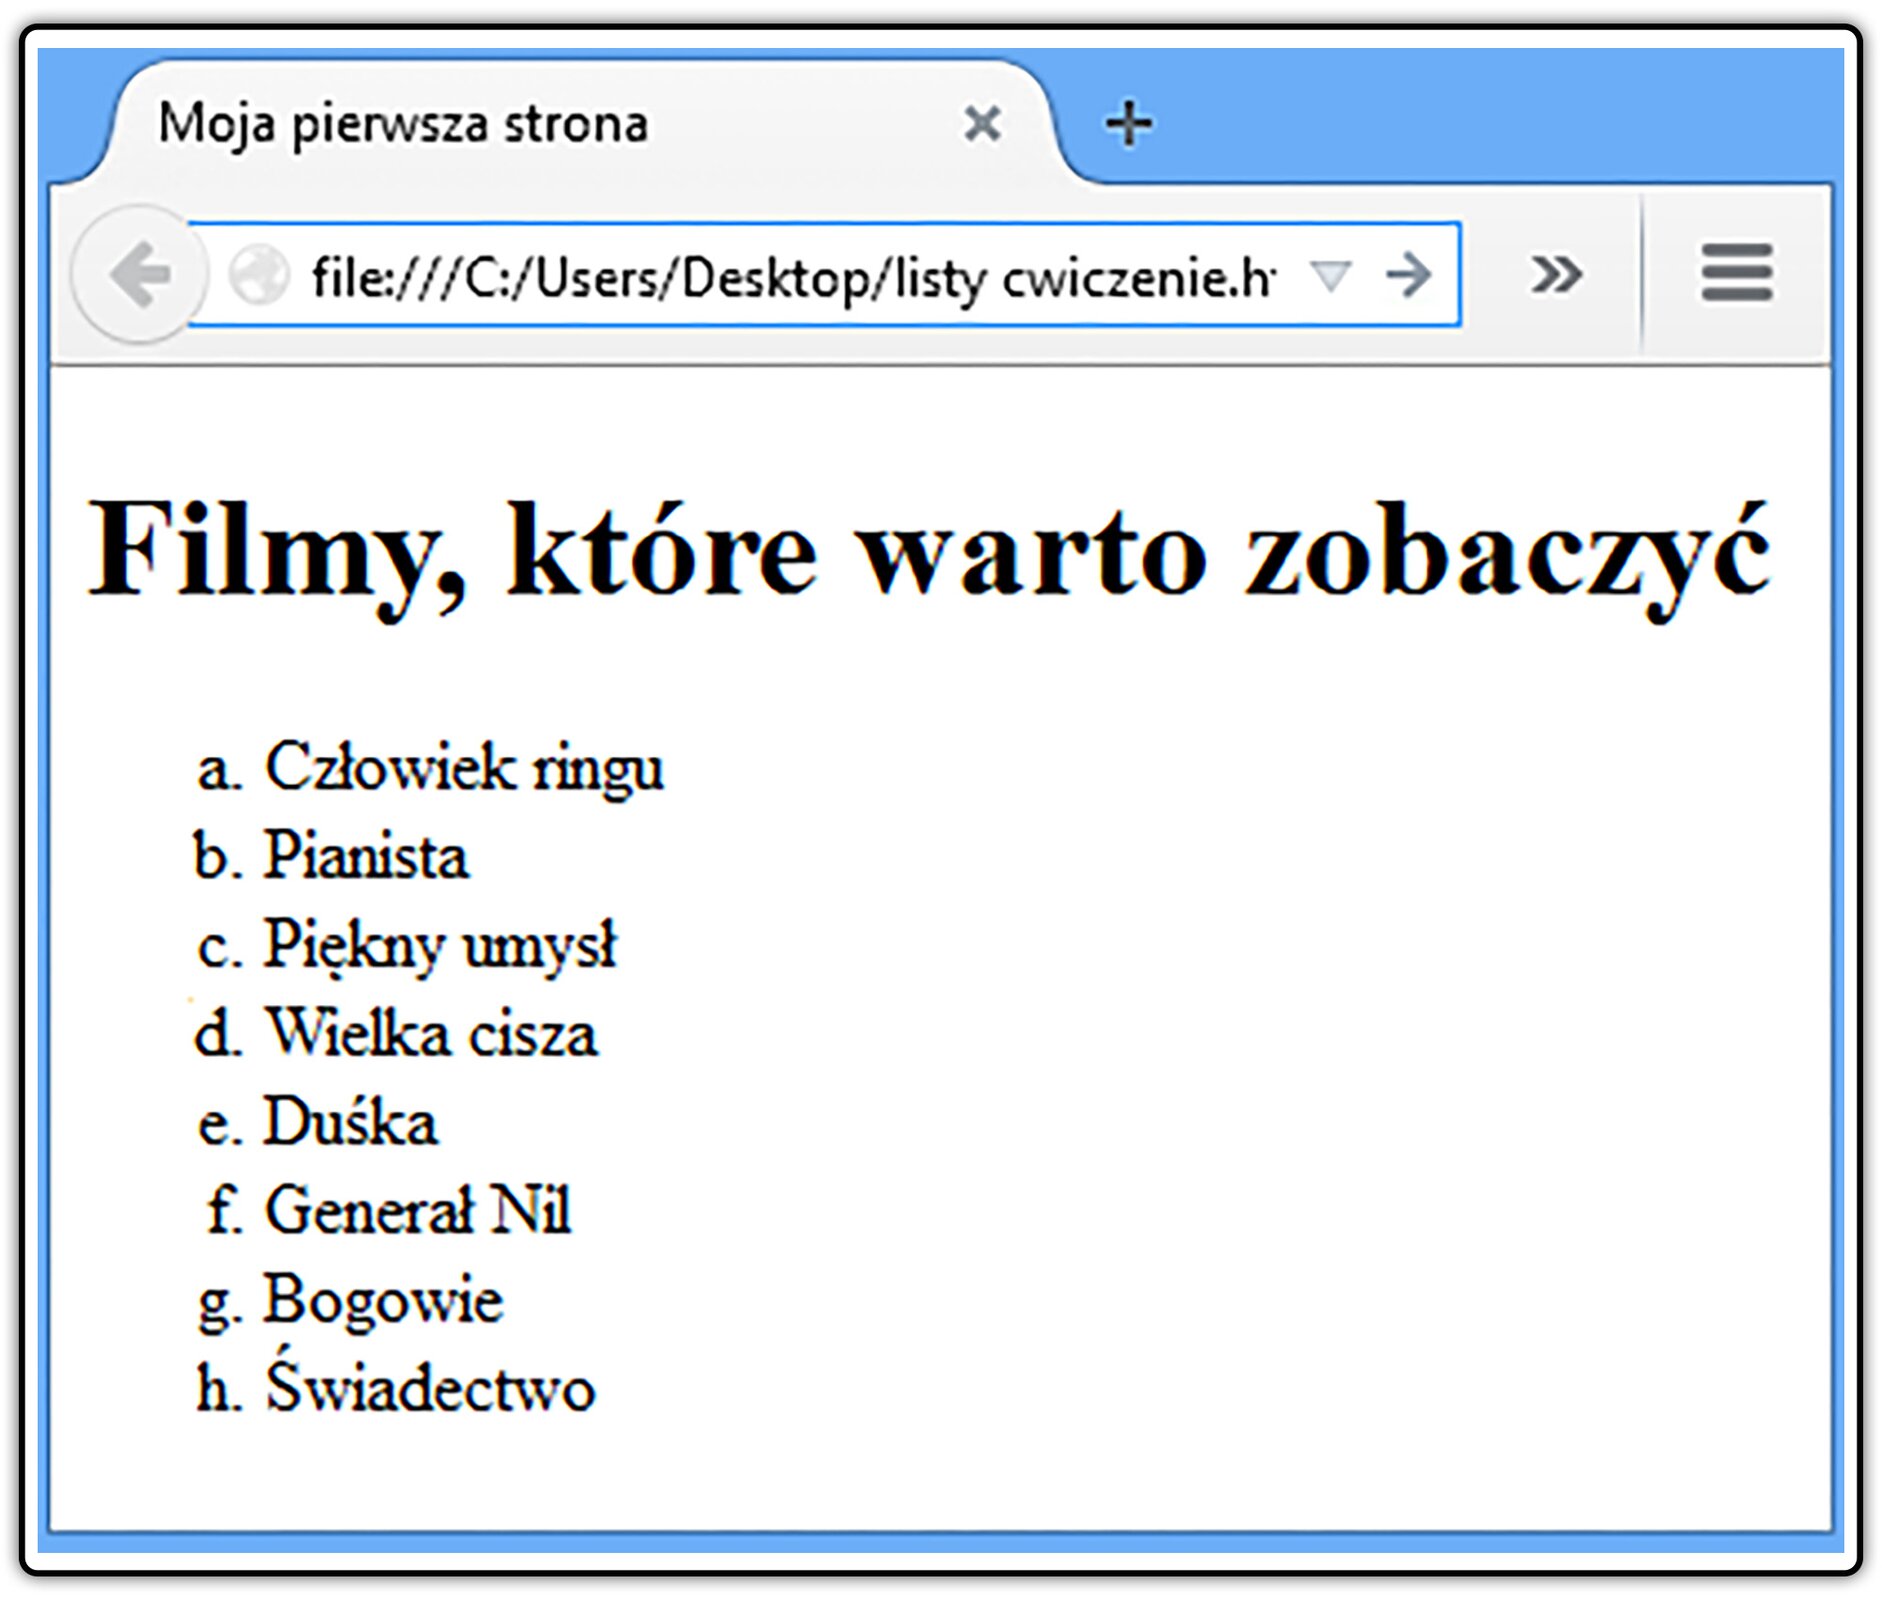 Zrzut widoku strony dokumentu HTML z listą wyliczeniową, w której elementy oznaczone są małymi literami